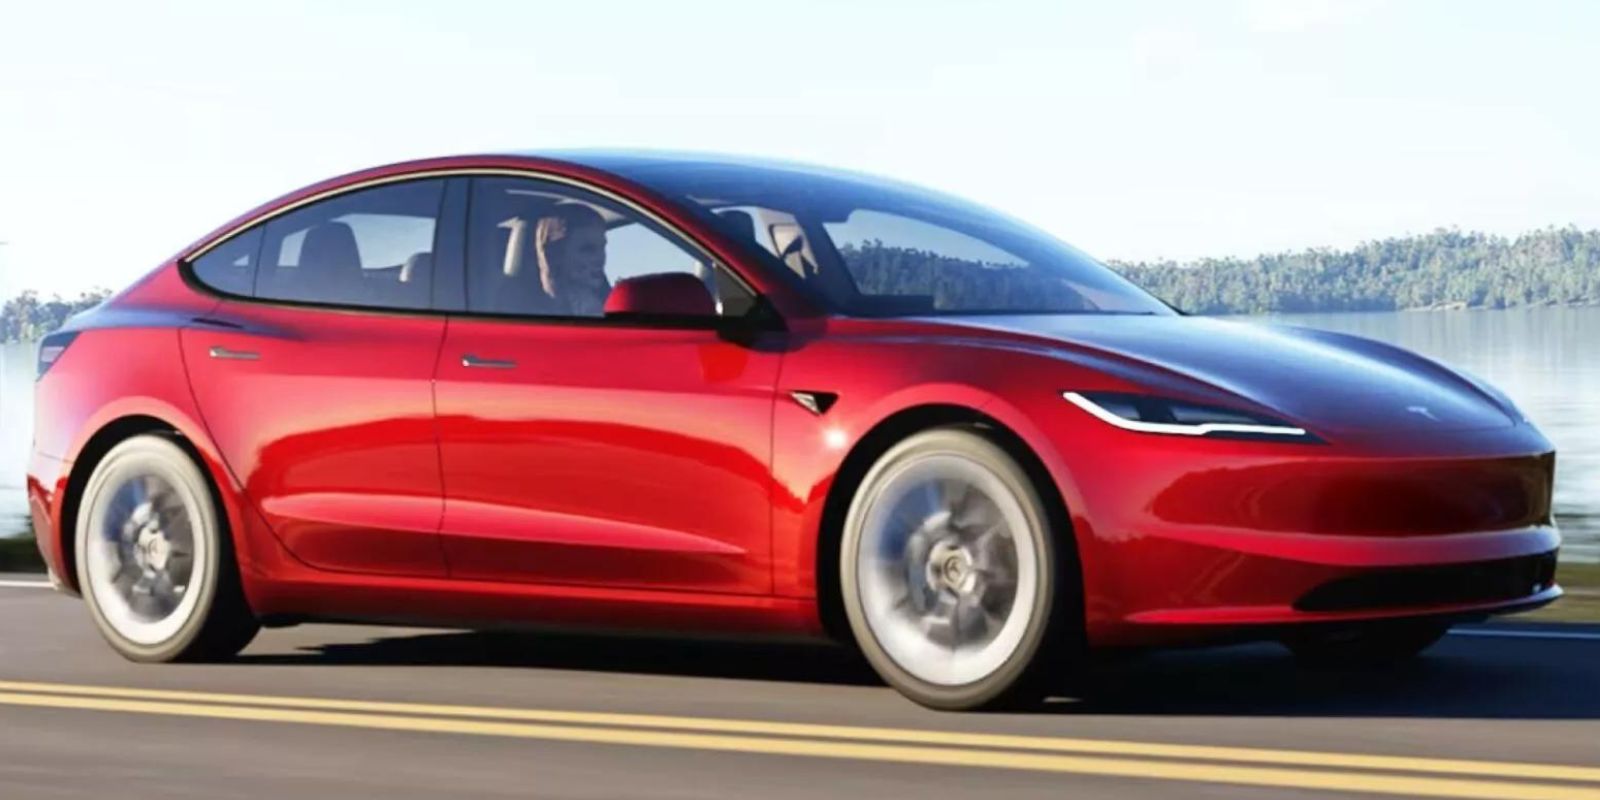 2025 Tesla Model Y Rendered Based On The Facelifted Model 3